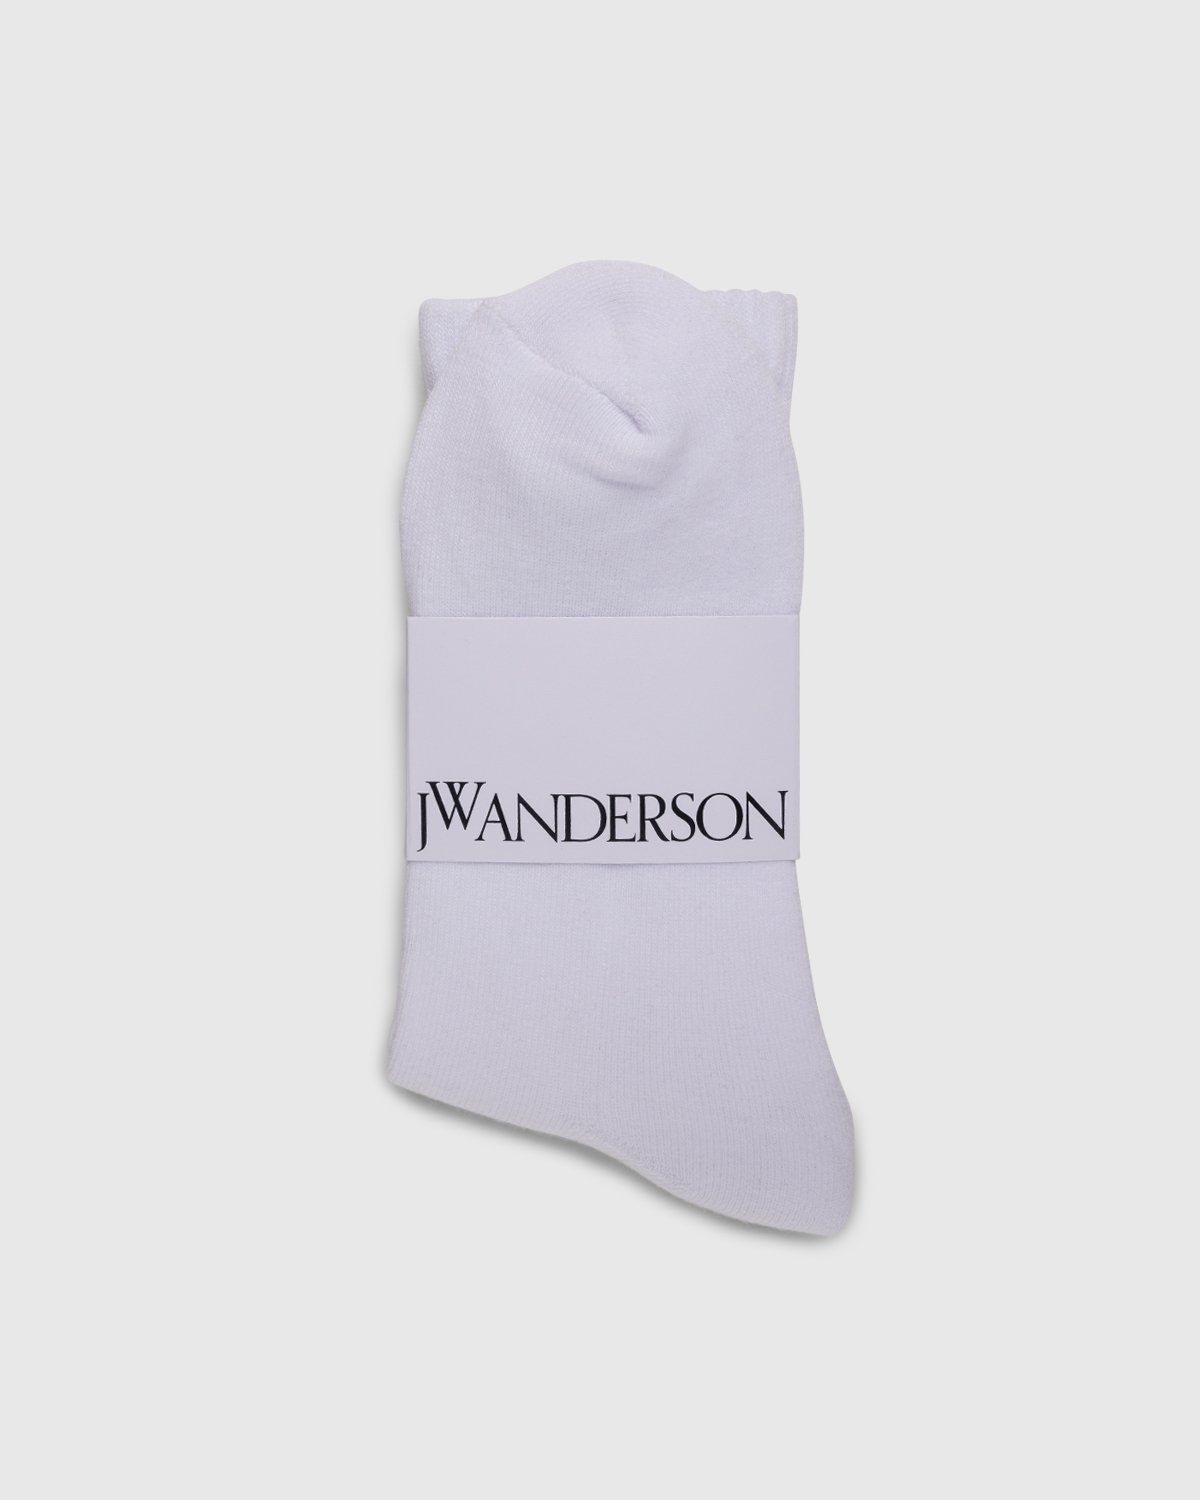 J.W. Anderson – JWA Logo Short Ankle Socks White/Black - Socks - White - Image 2